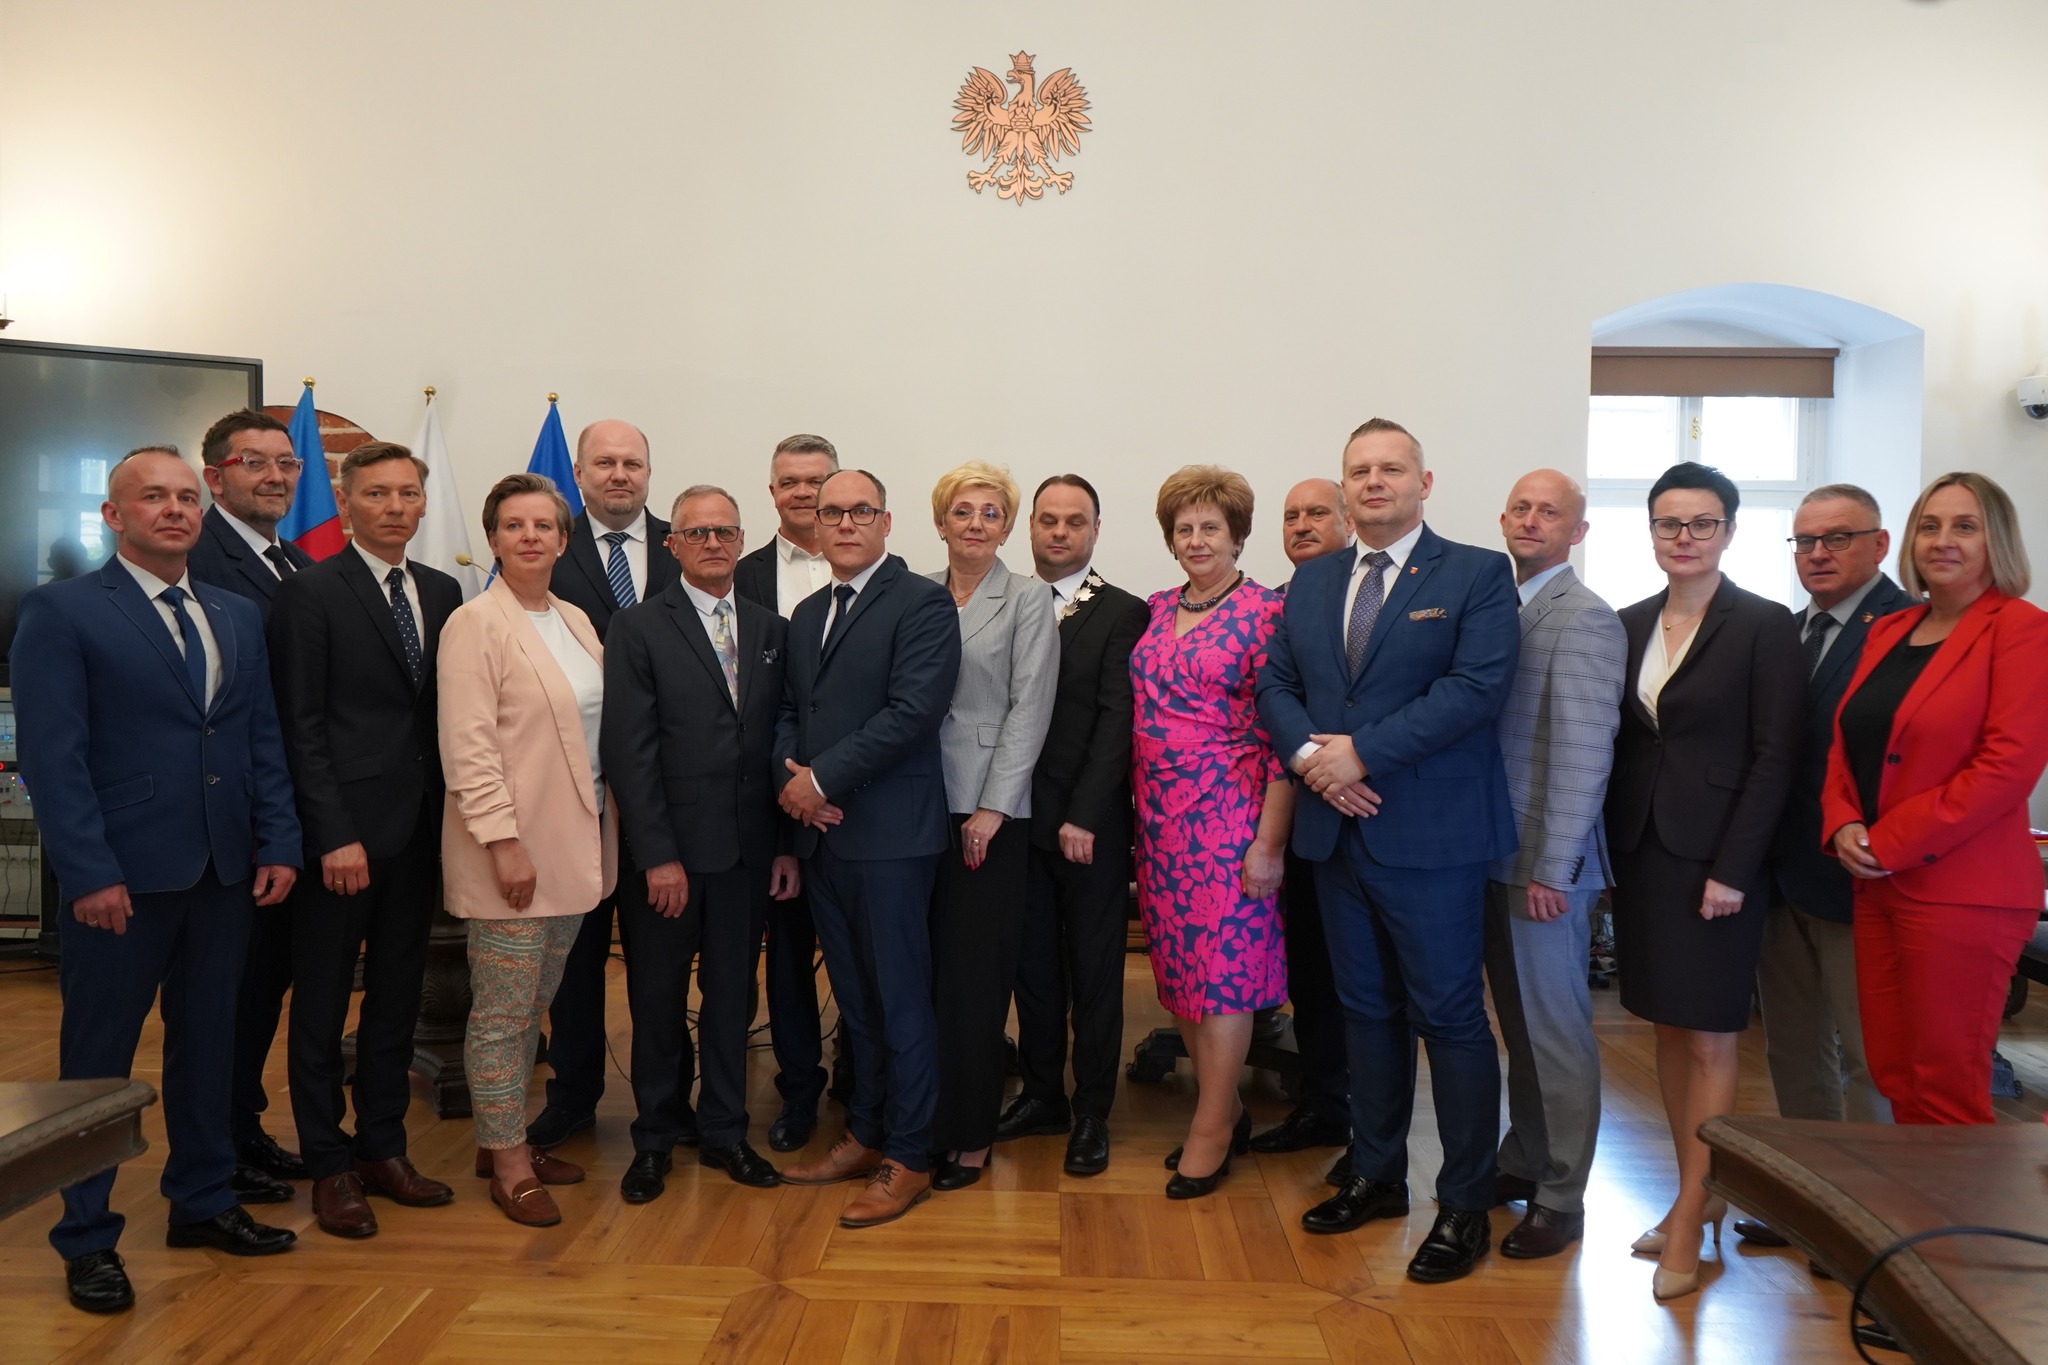 Radni Rady Miejskiej Koła IX kadencji w sali sesyjnej Ratusza wraz z Burmistrzem i Sekretarzem